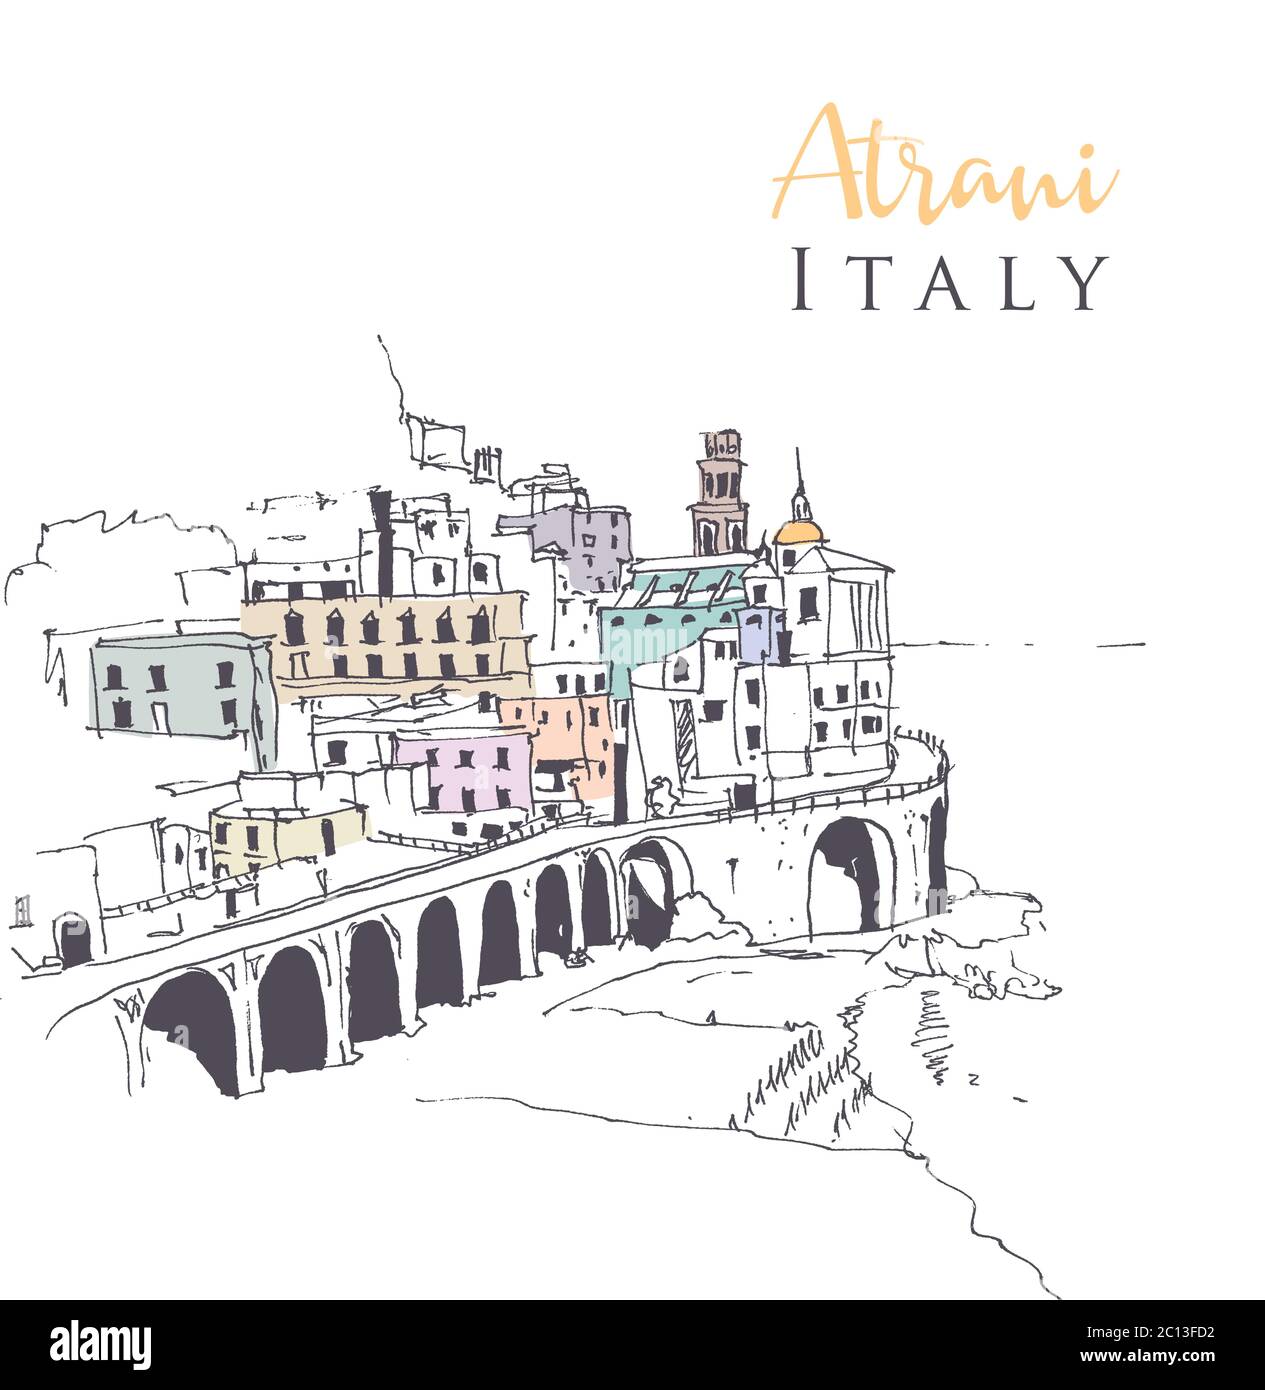 Disegno disegno illustrazione di Atrani, il più piccolo villaggio del sud-ovest Italia. Illustrazione Vettoriale